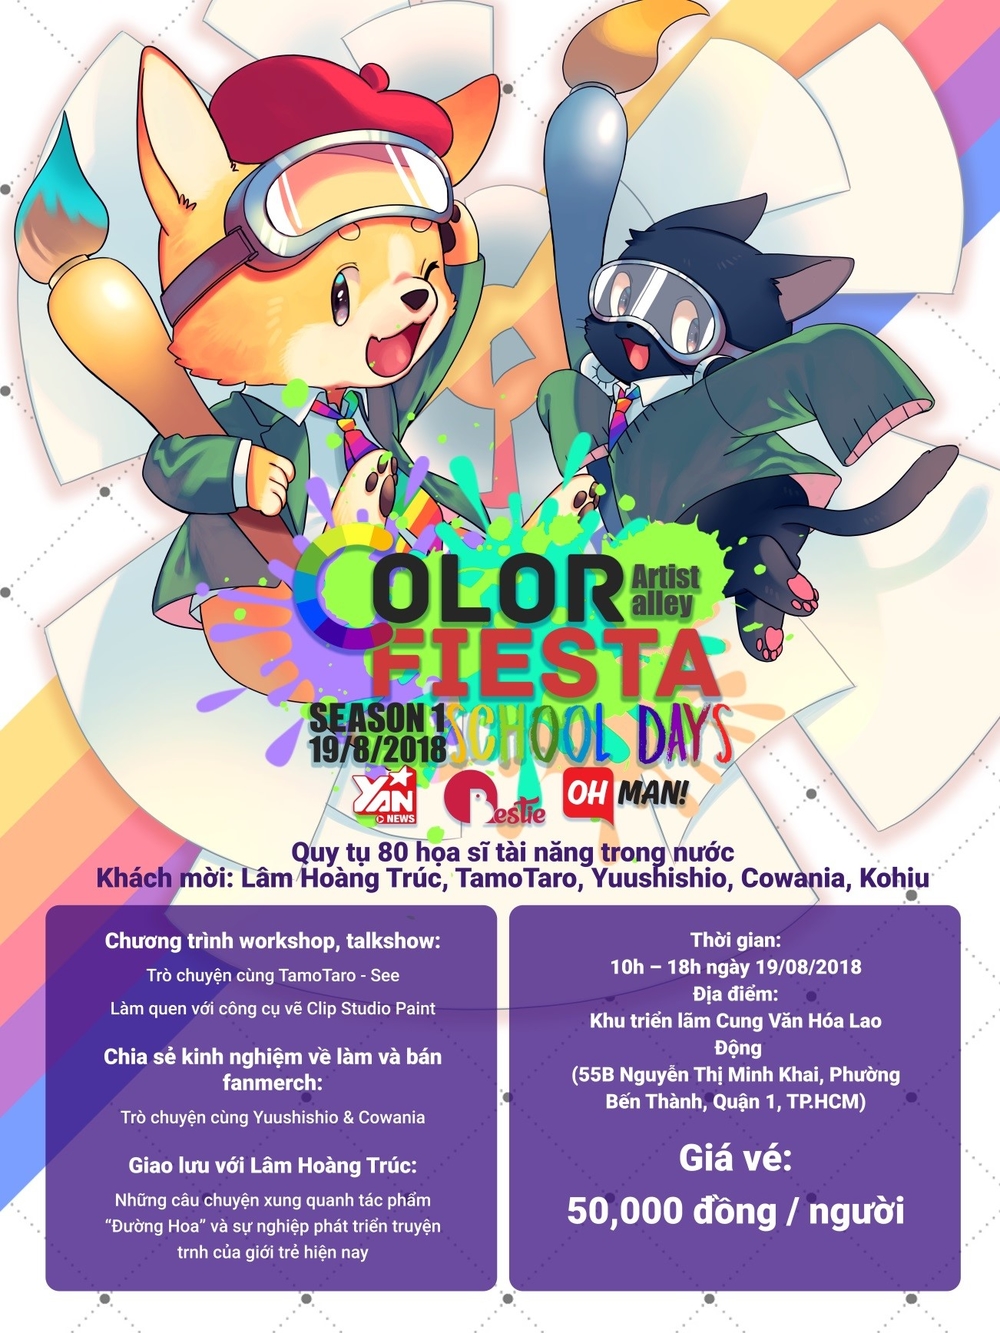 Cuối tuần này rủ nhau đến sự kiện Color Fiesta - Nơi hội tụ của những con tim yêu hội họa